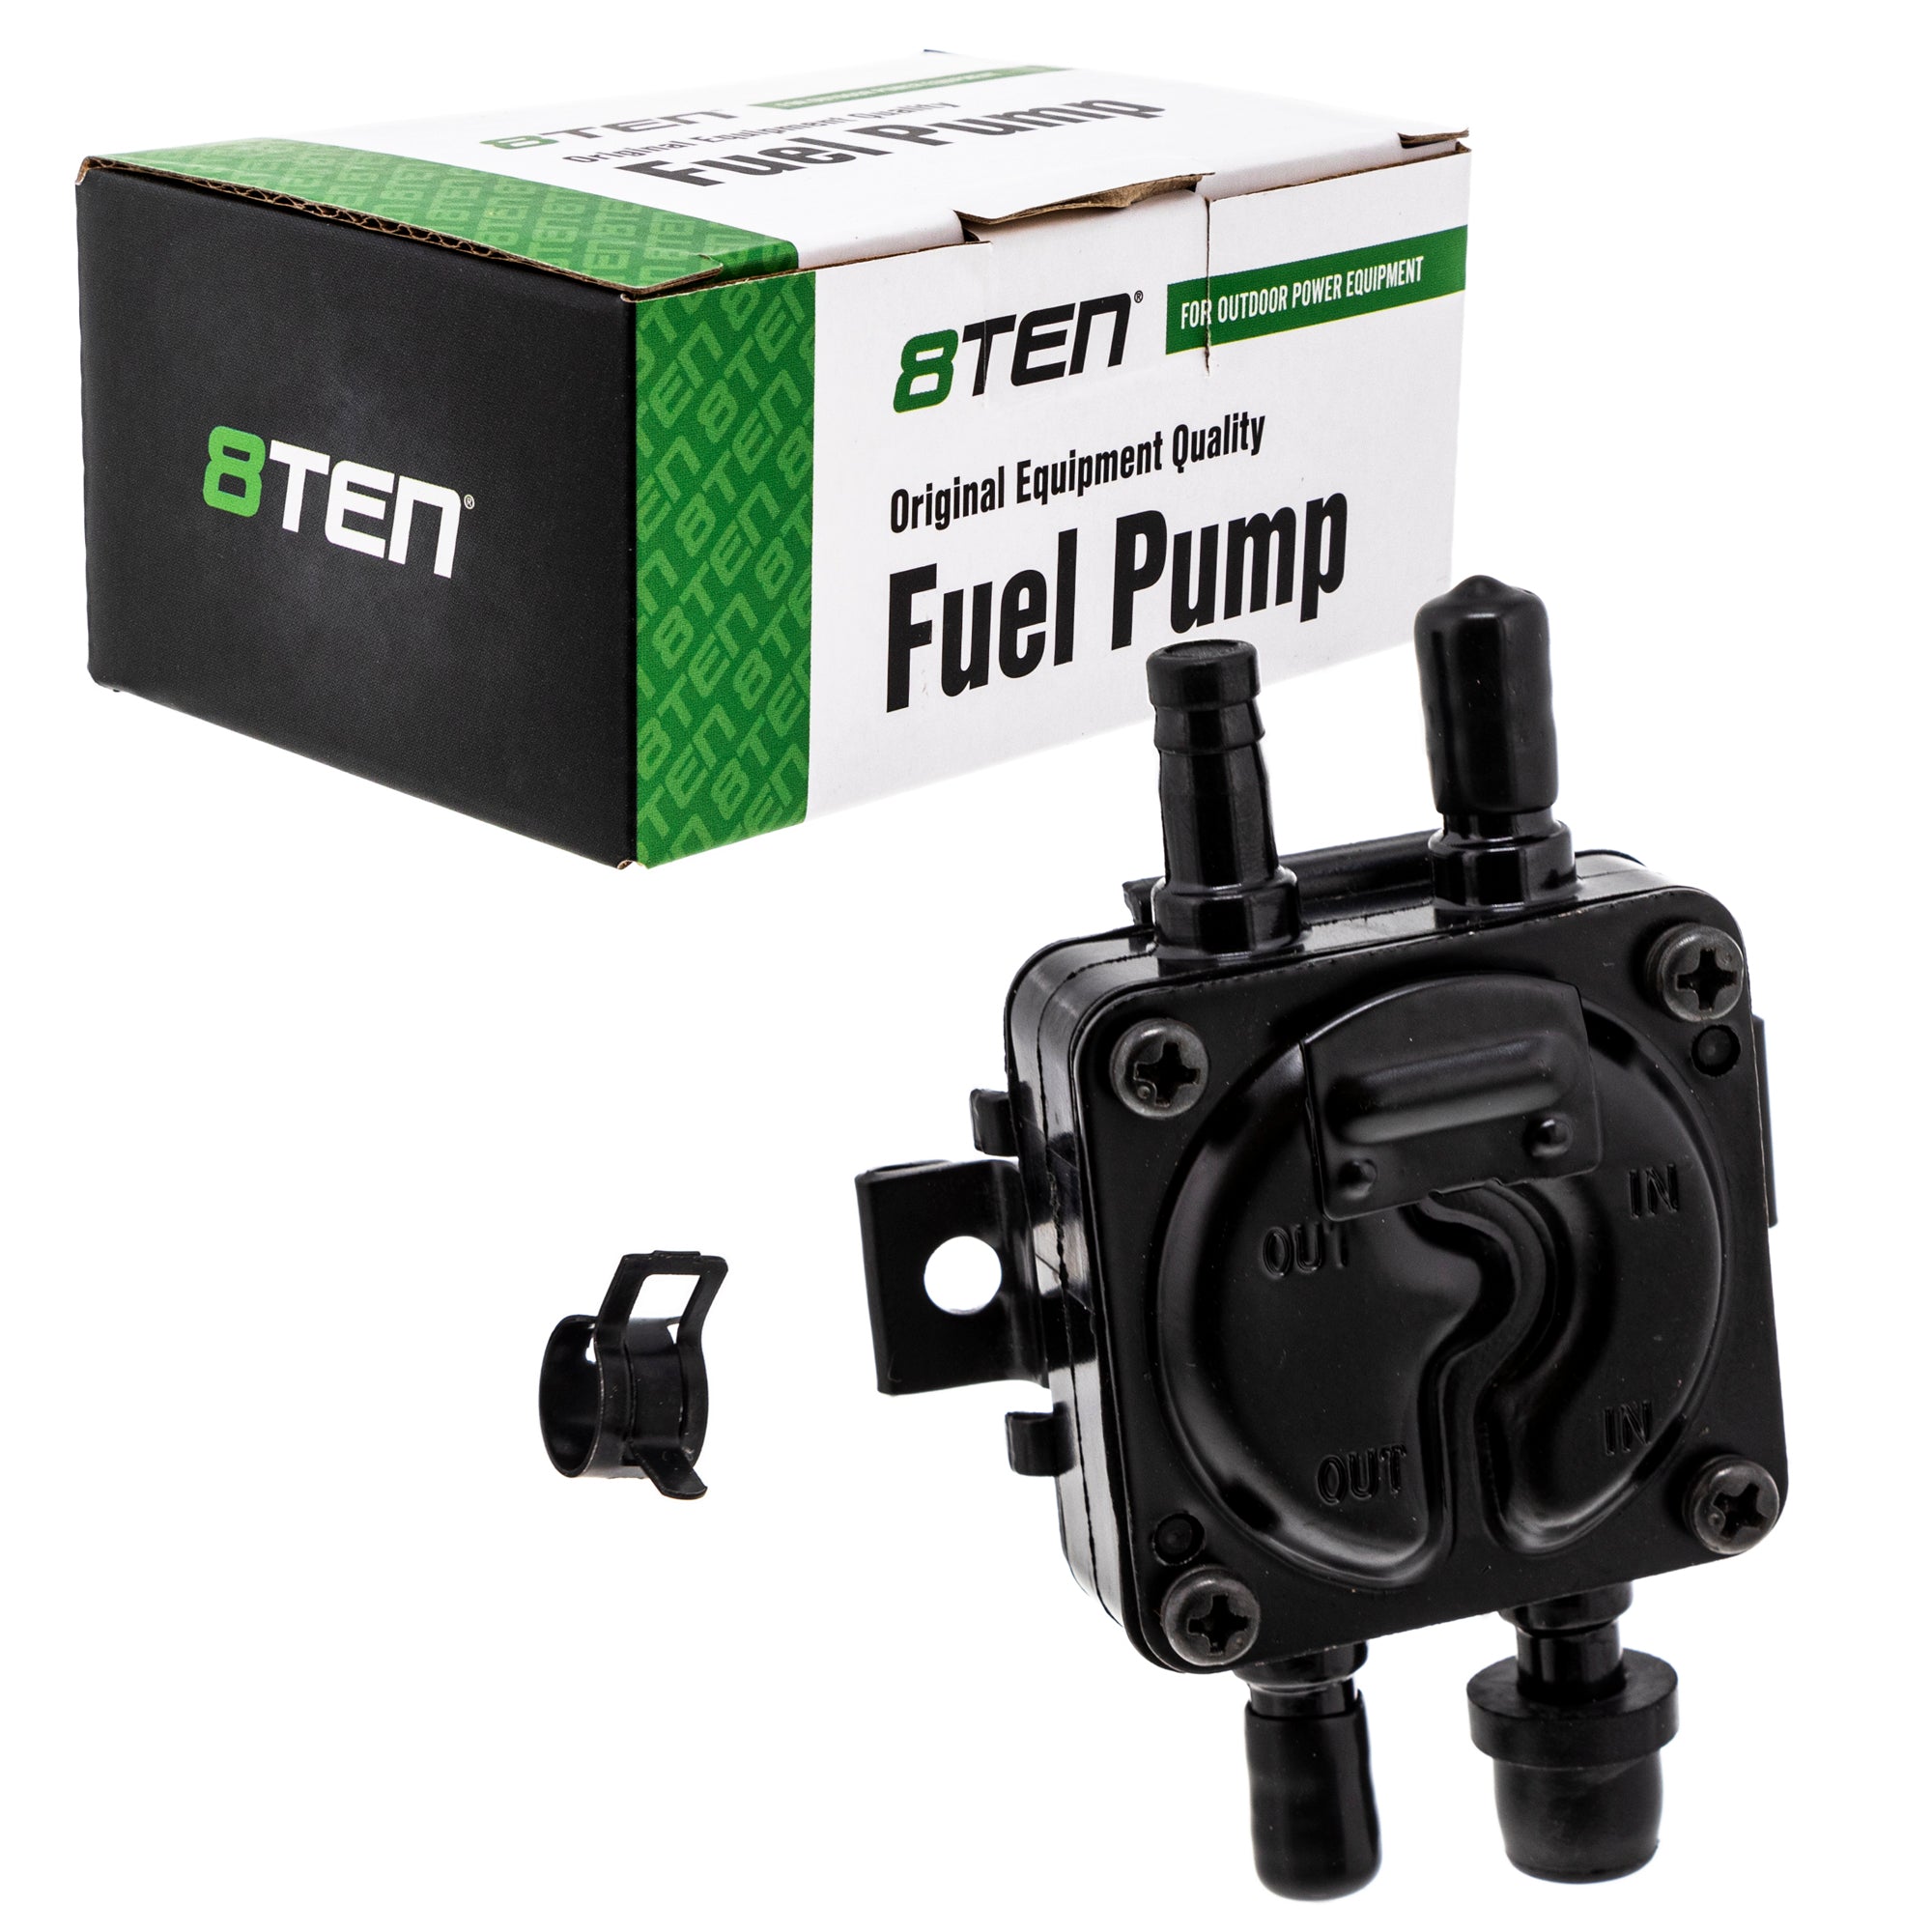 Fuel Pump Kit for Toro Cummins 312-8 520-H 416-8 310-8 Tractors